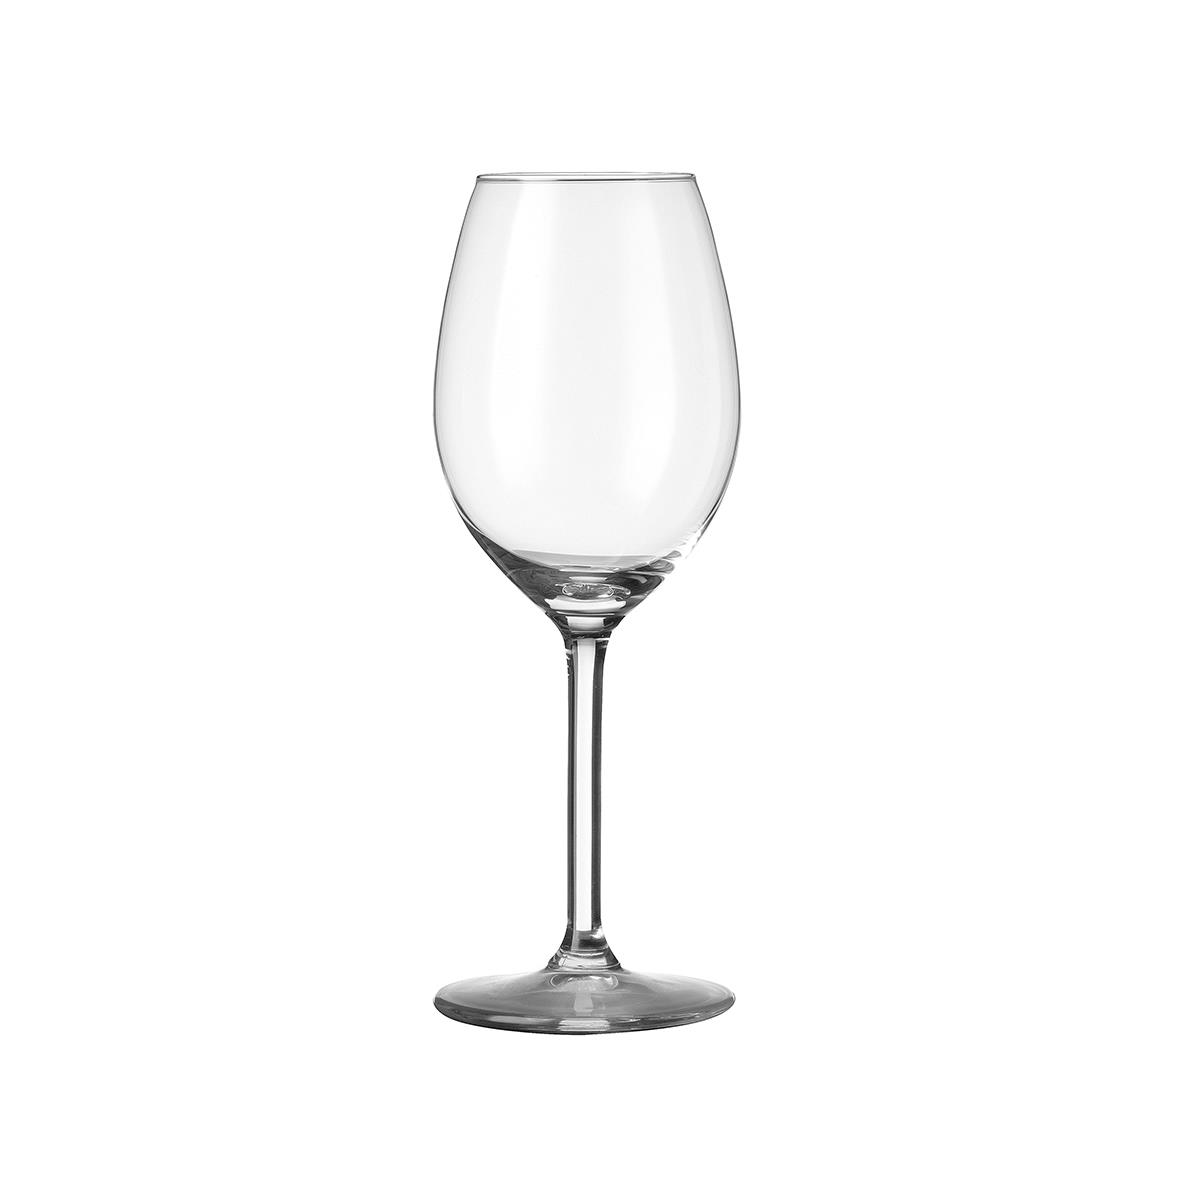 Esprit Wijnglas 25 cl. bedrukken